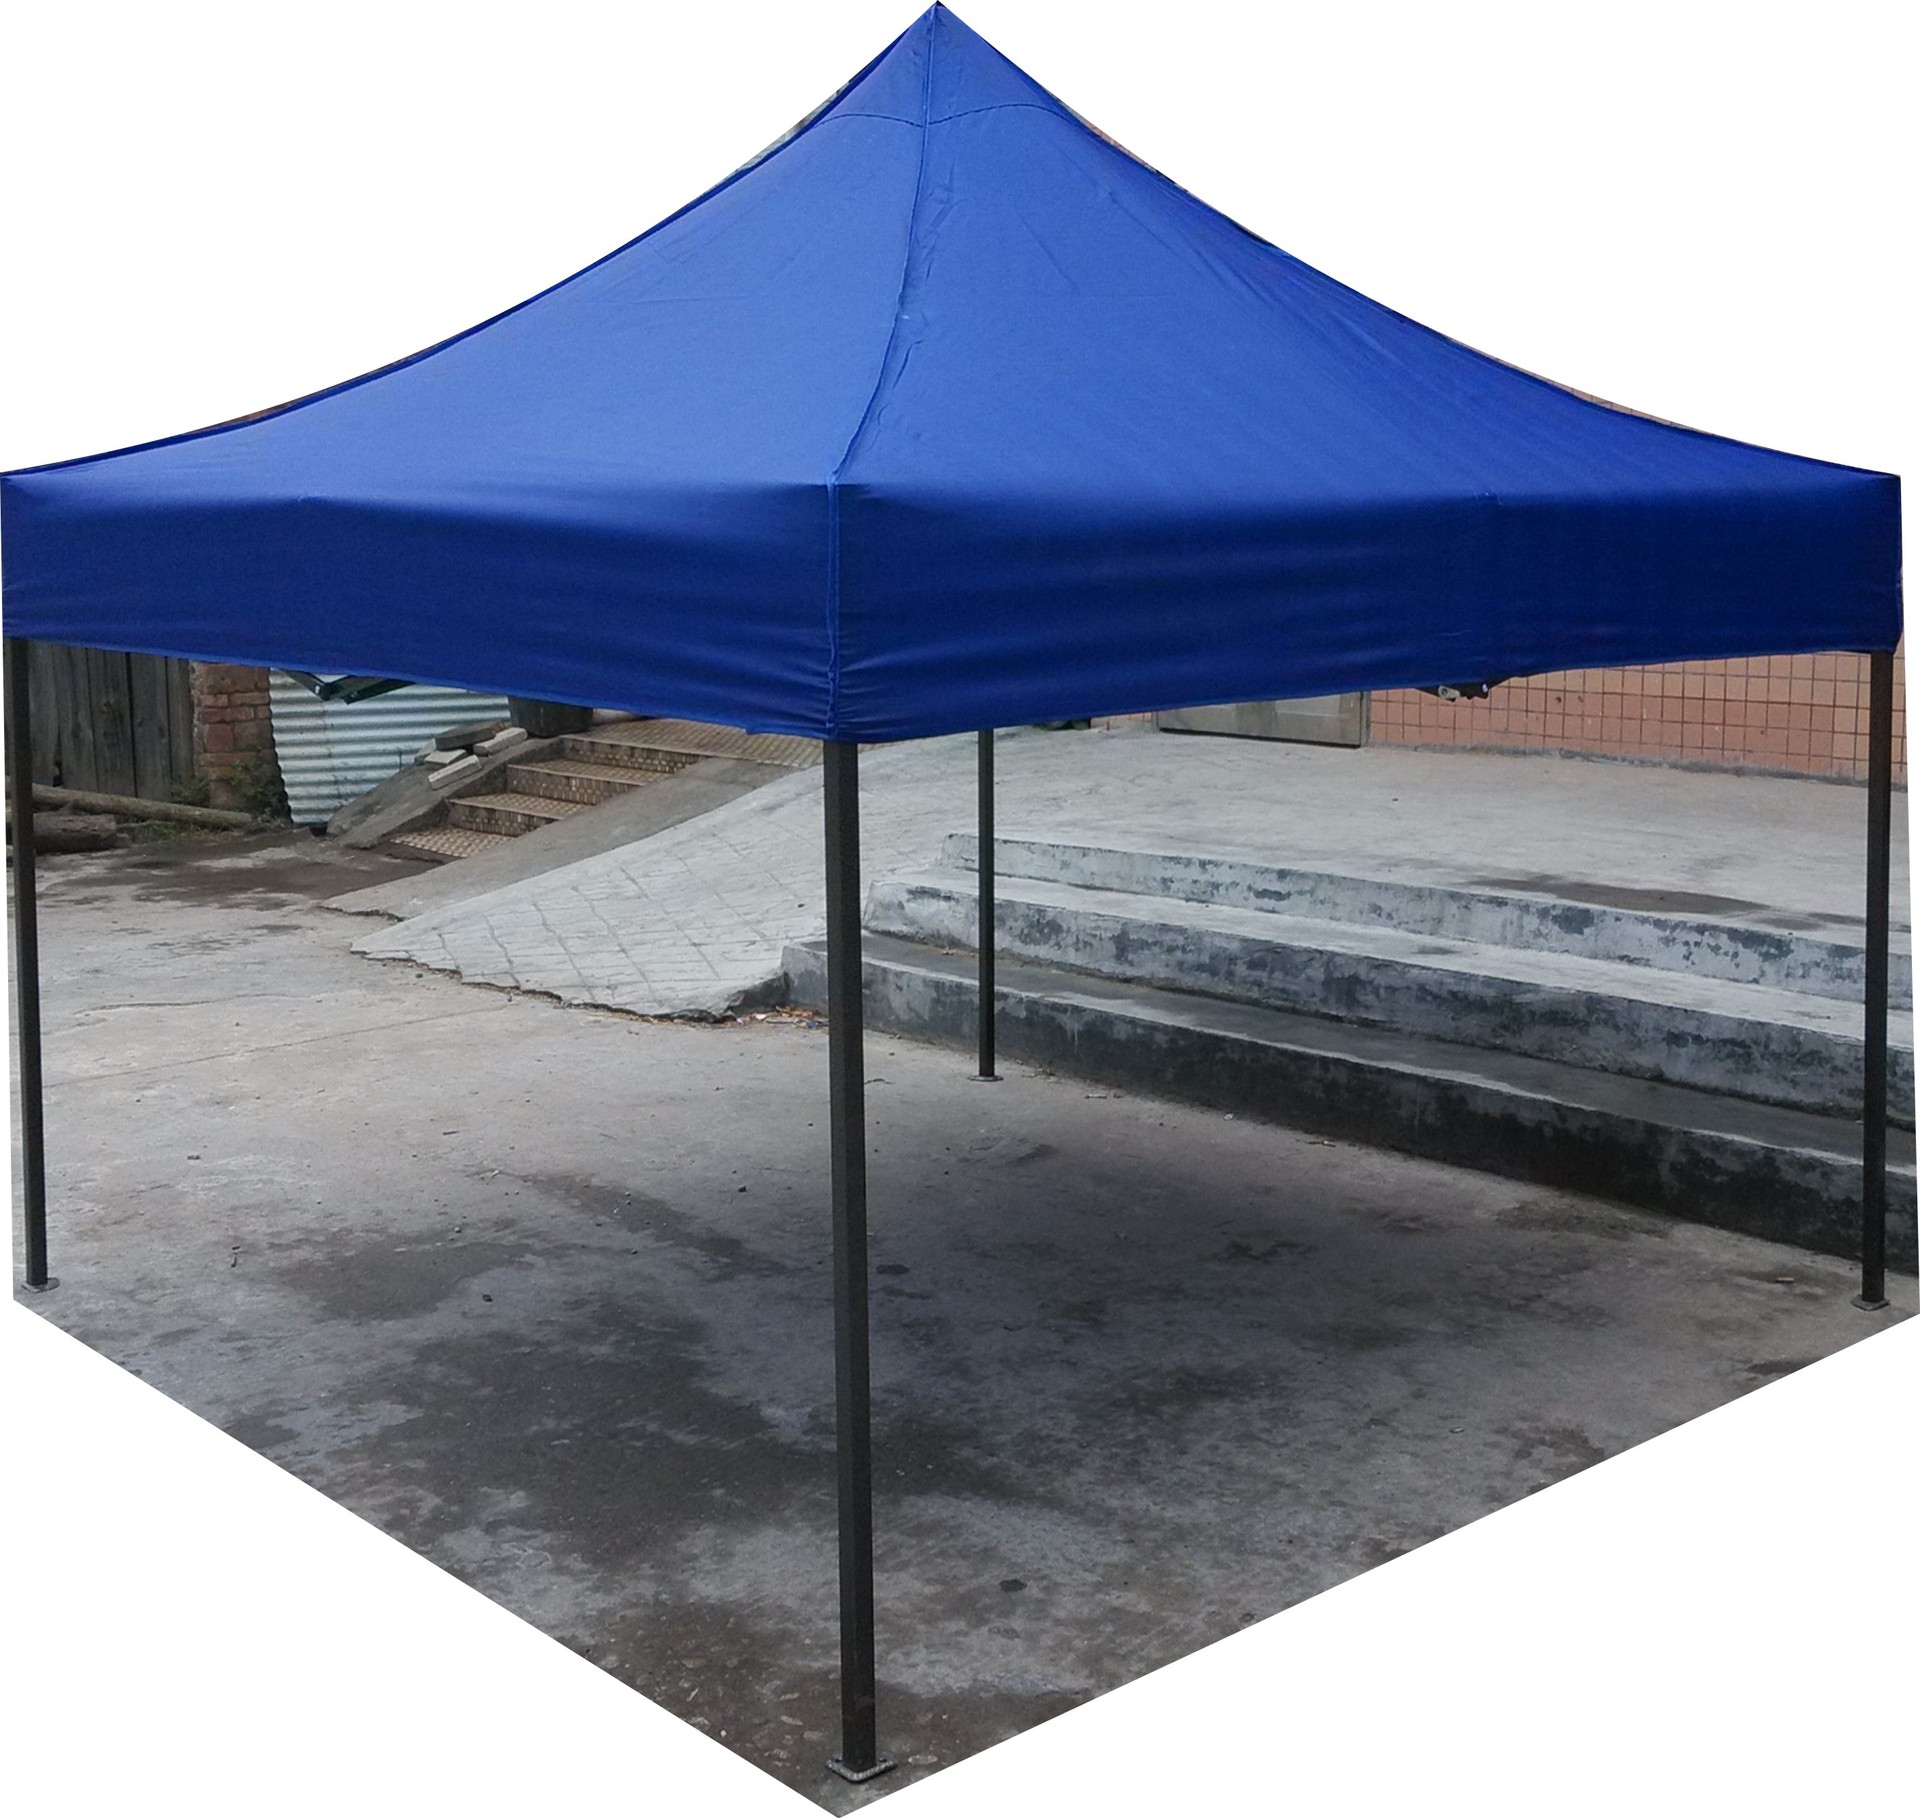 厂家专业生产市场广告3x3米蓝色帐篷可批发零售户外展销展览帐篷